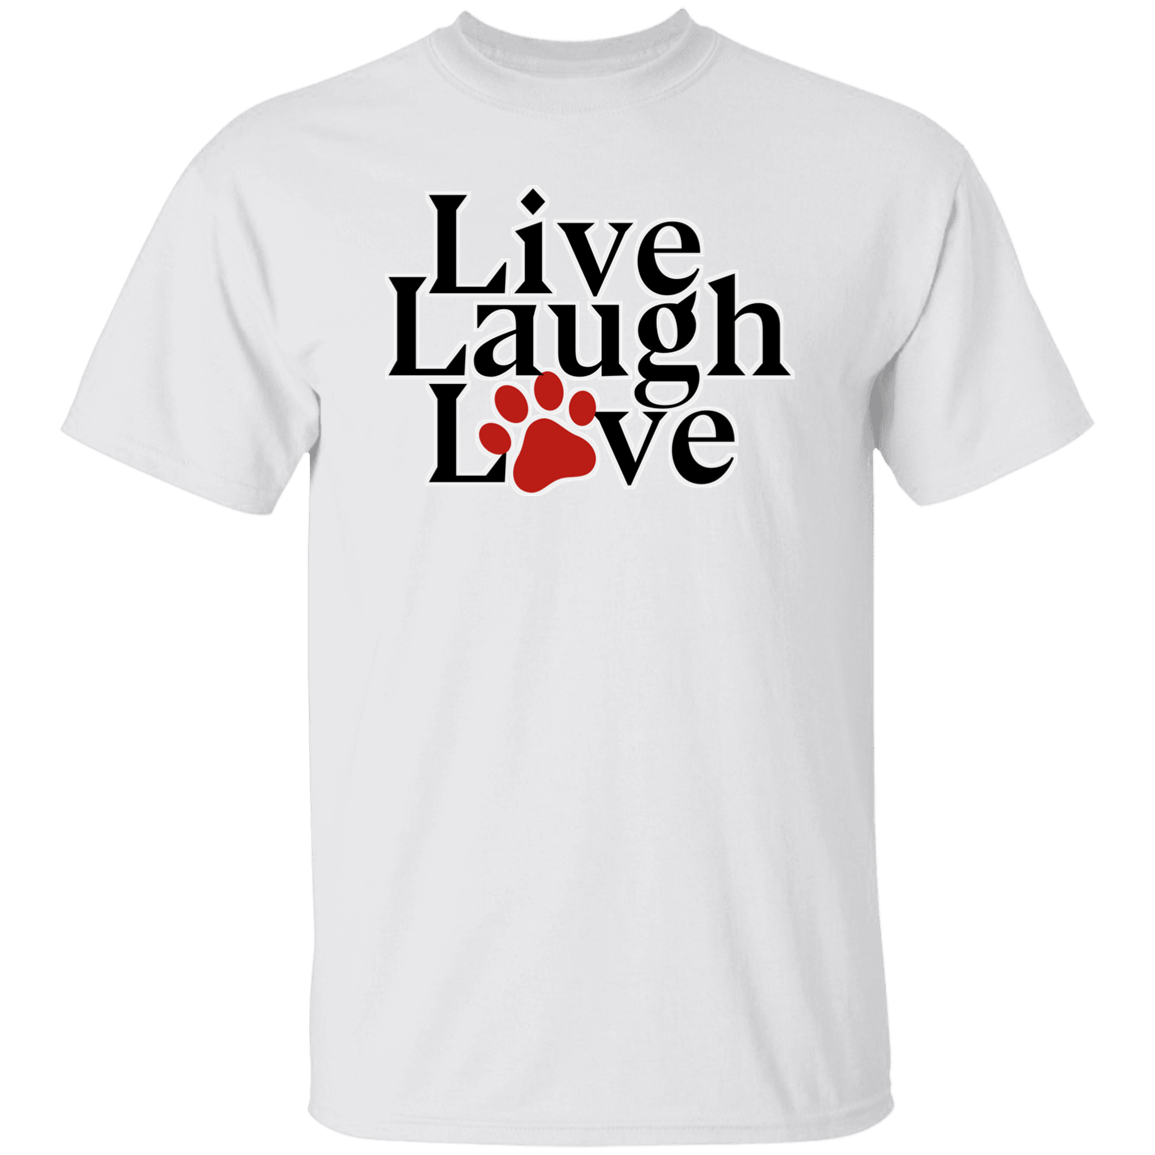 Live Laugh Love - T-Shirt.